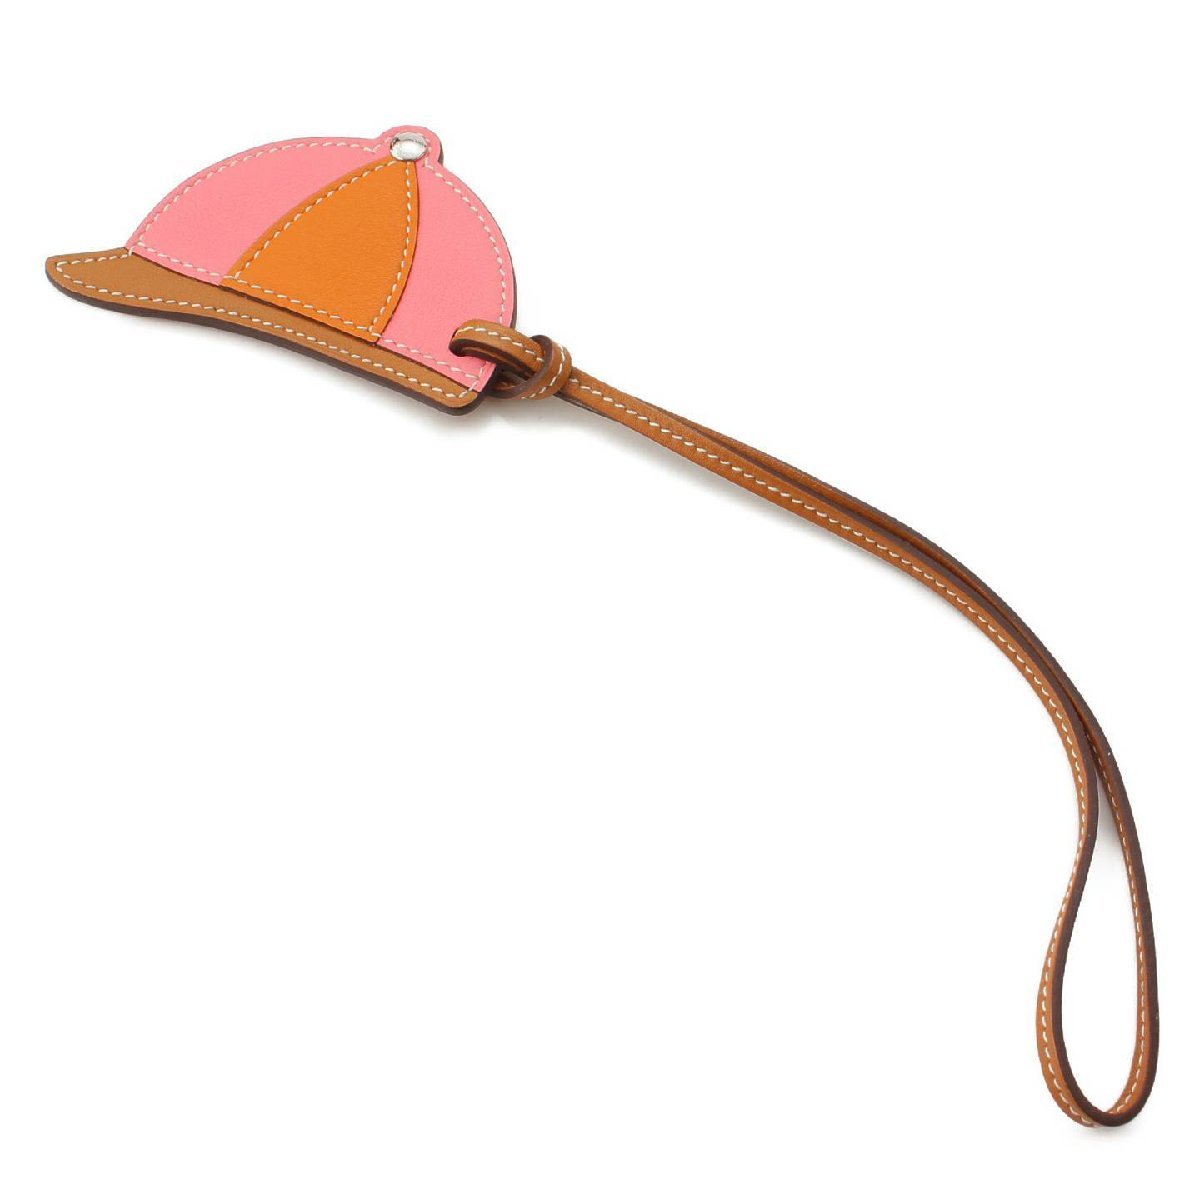 【エルメス】Hermes パドックボンベイ 帽子 レザー バッグチャーム PADBOMTAGK4 ピンク×オレンジ 未使用【】【正規品保証】175349